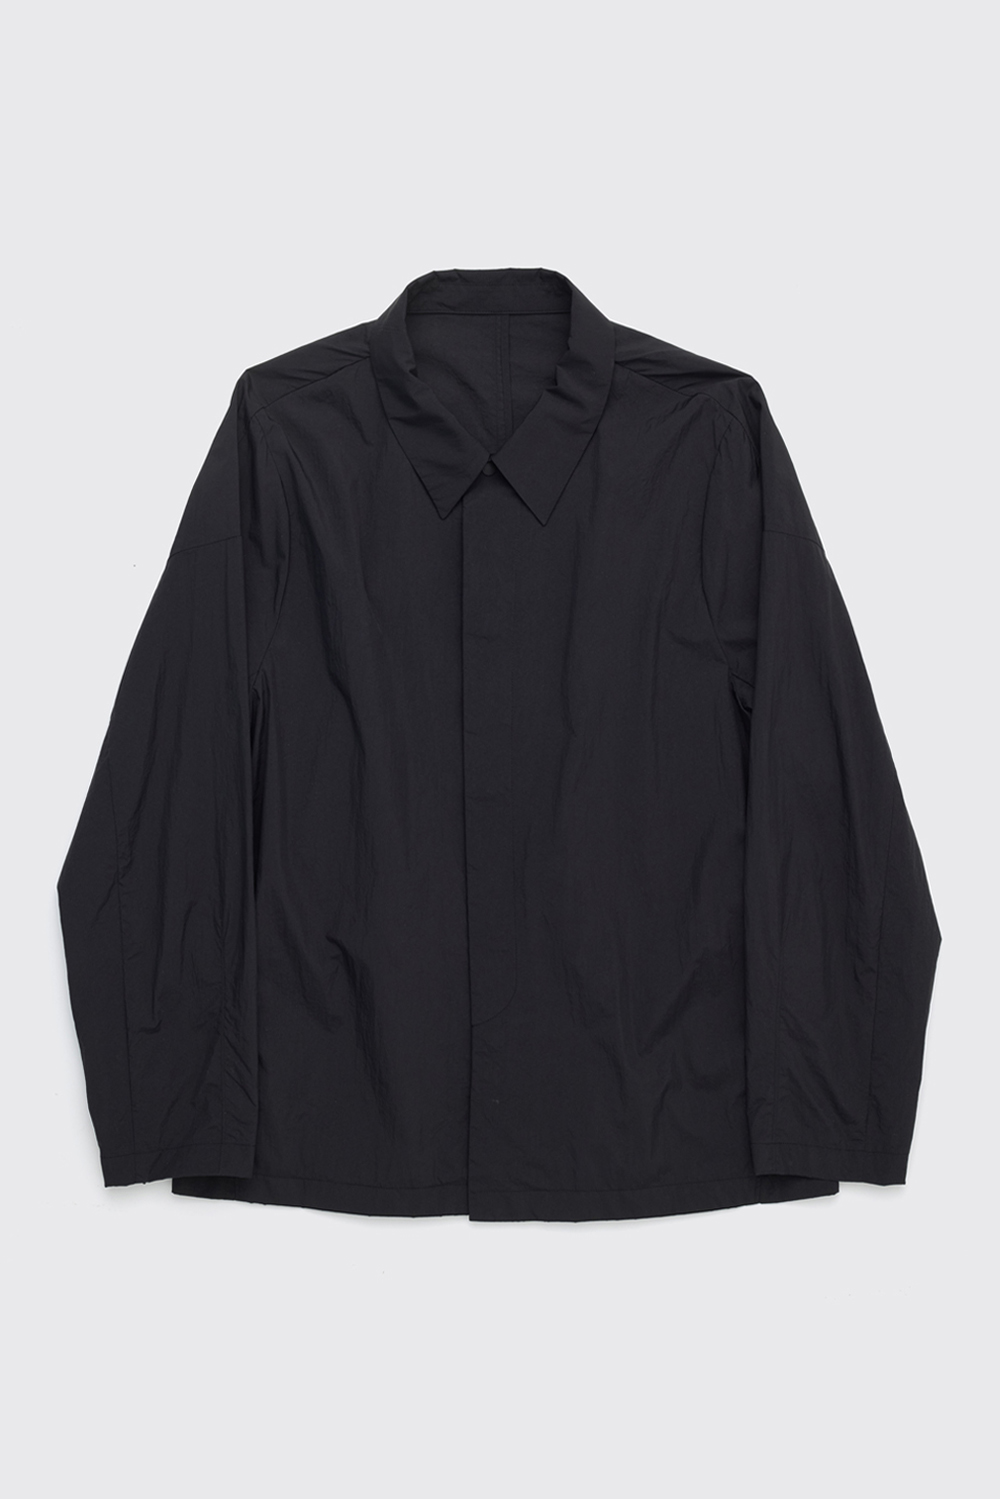 Uniform Jacket Black